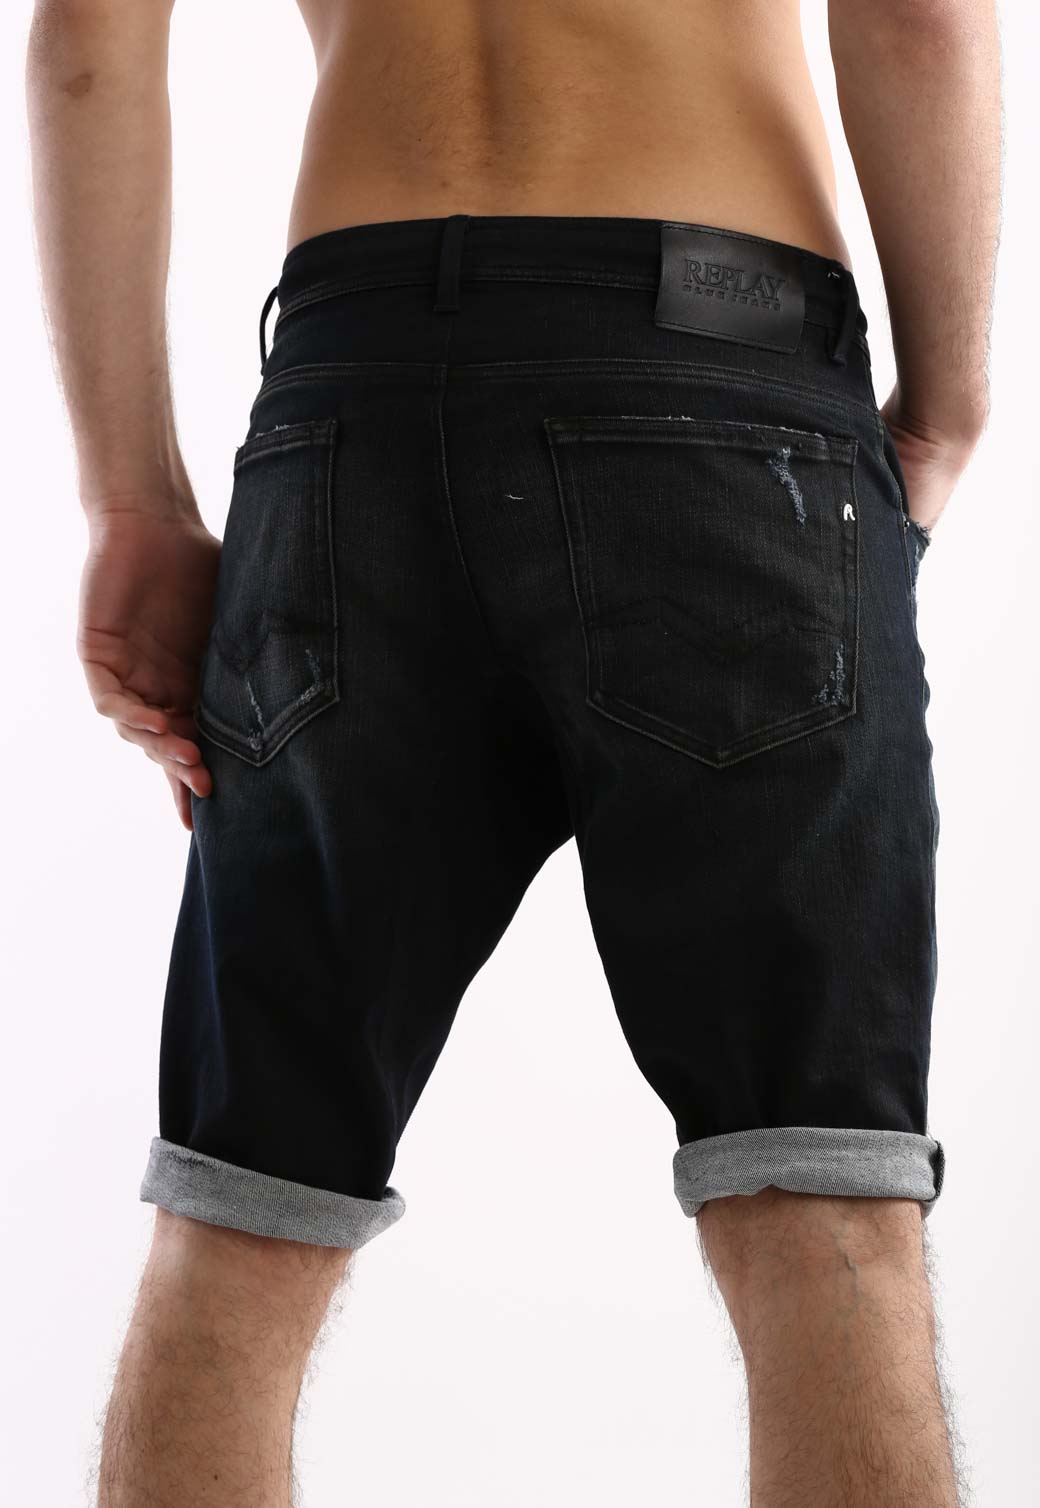 ג'ינס ברמודה עם קרעים גברים - Replay